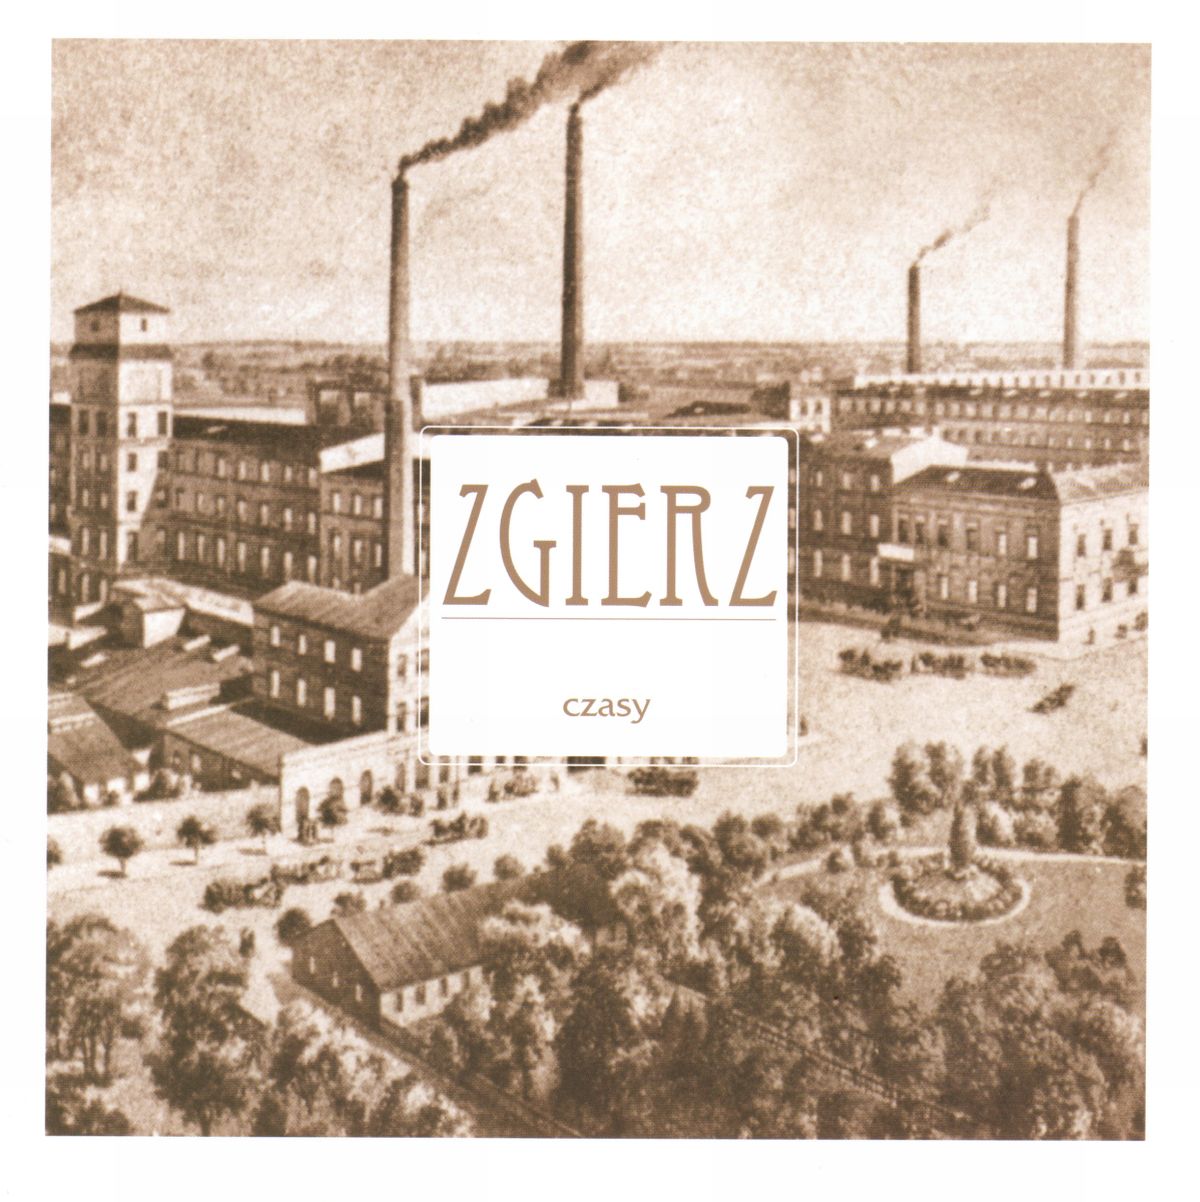 album-zgierz-czasy-przedstawia-histori-miasta-wraz-ze